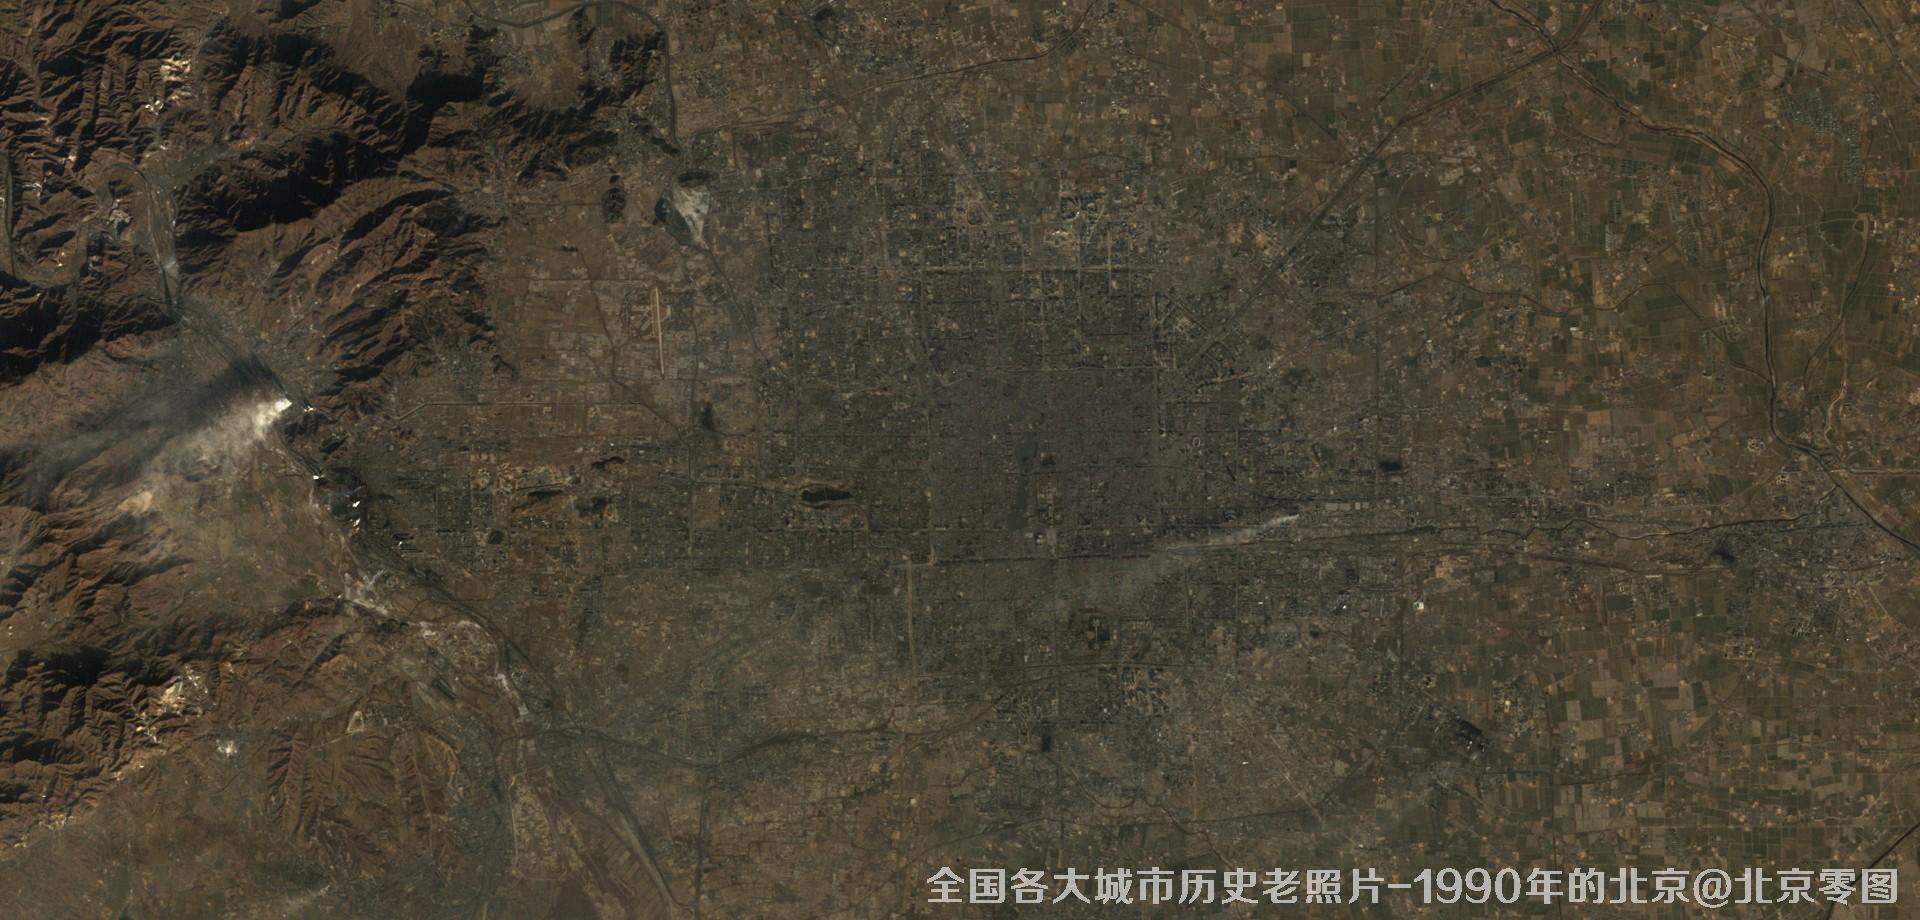 美国Landsat卫星拍摄的1990年的北京市历史卫星影像图